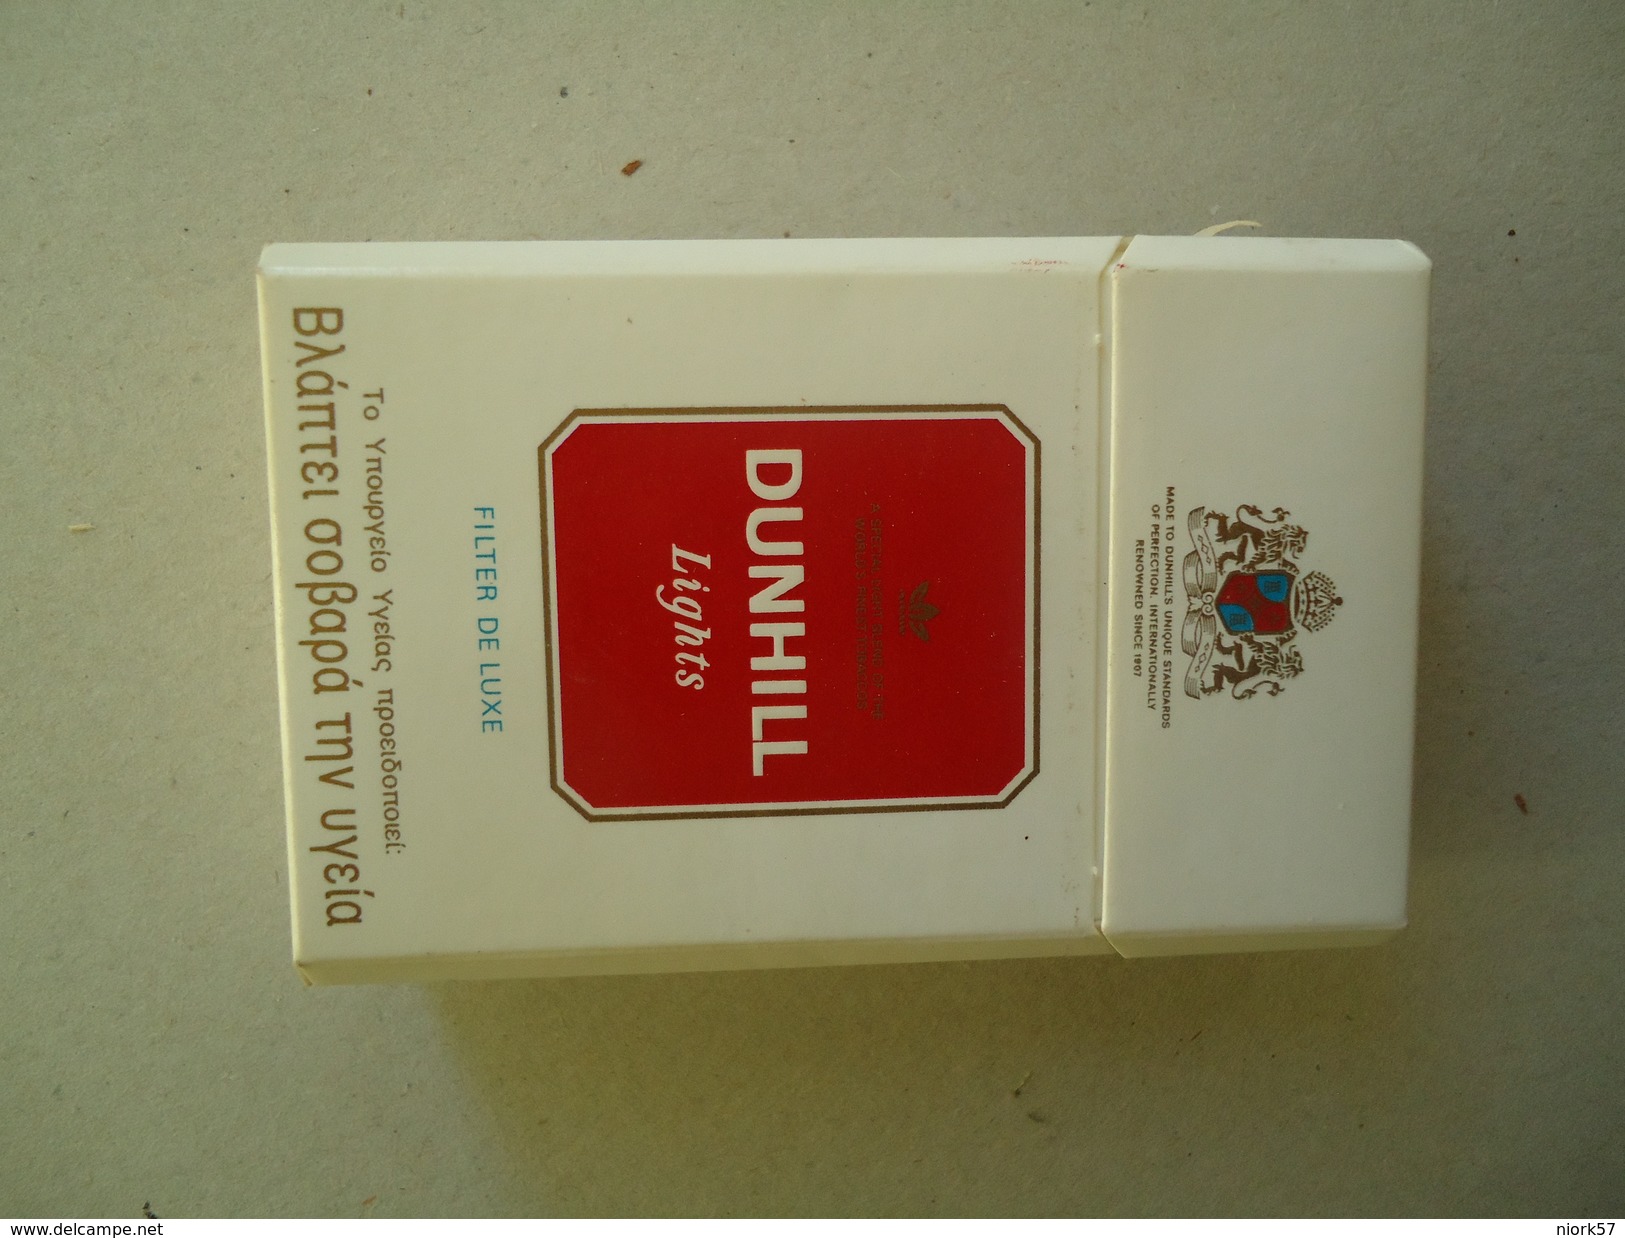 GREECE EMPTY TOBACCO BOXES IN DRACHMAS DUNHILL - Contenitori Di Tabacco (vuoti)